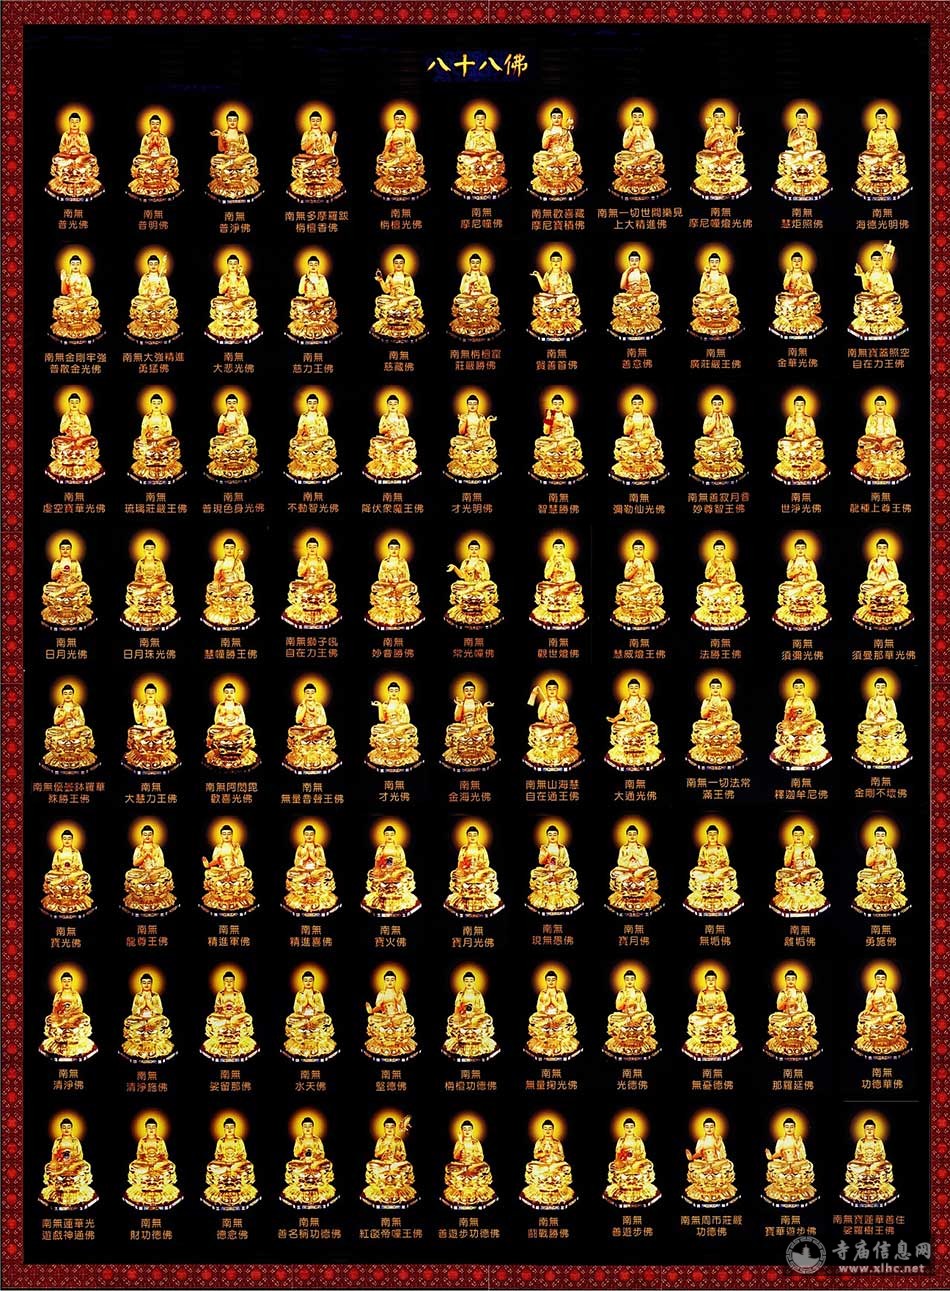 八十八佛-寺庙信息网